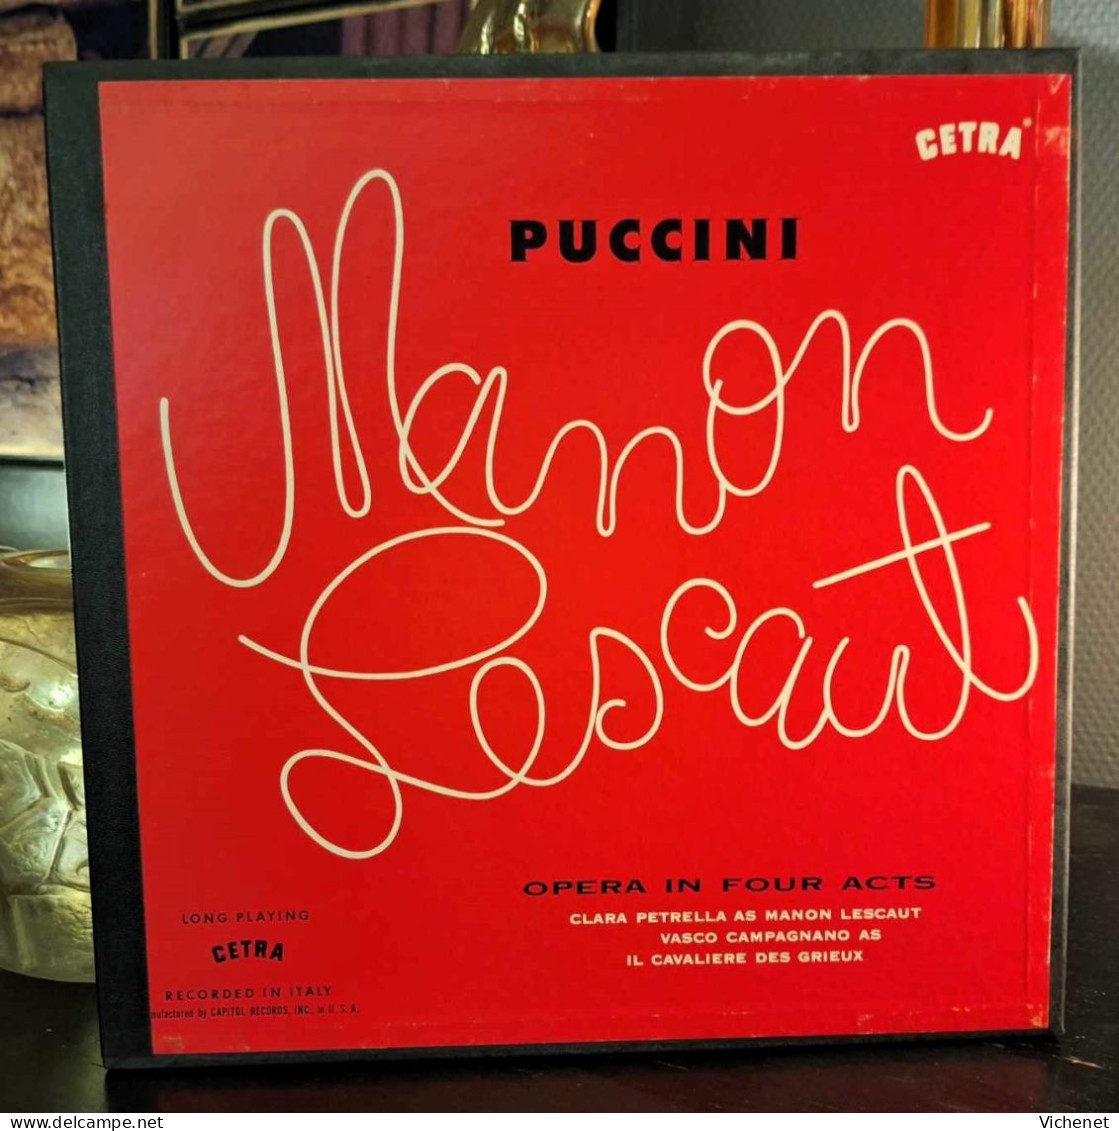 Puccini - Manon Lescaut - Box 3 LP's - Opera